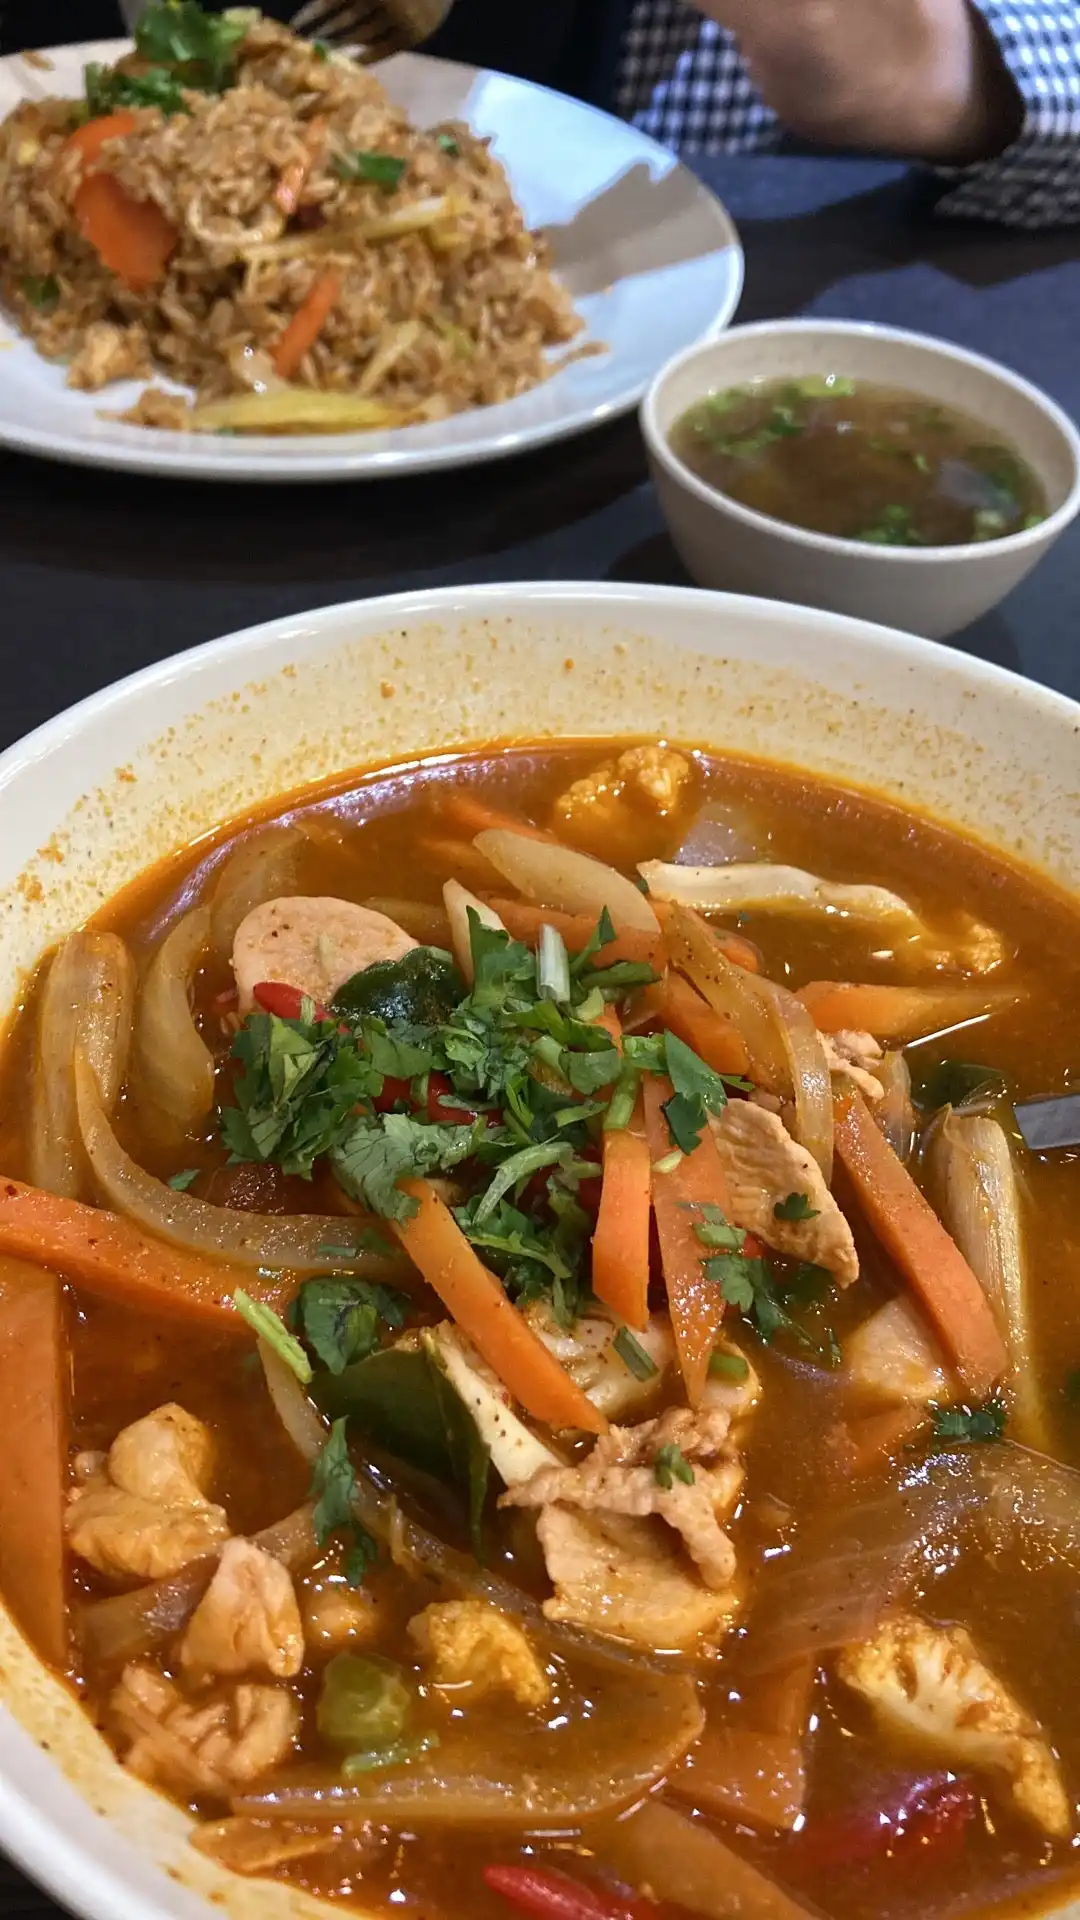 Restoran Alip's Ikan bakar Dan Masakan Thai